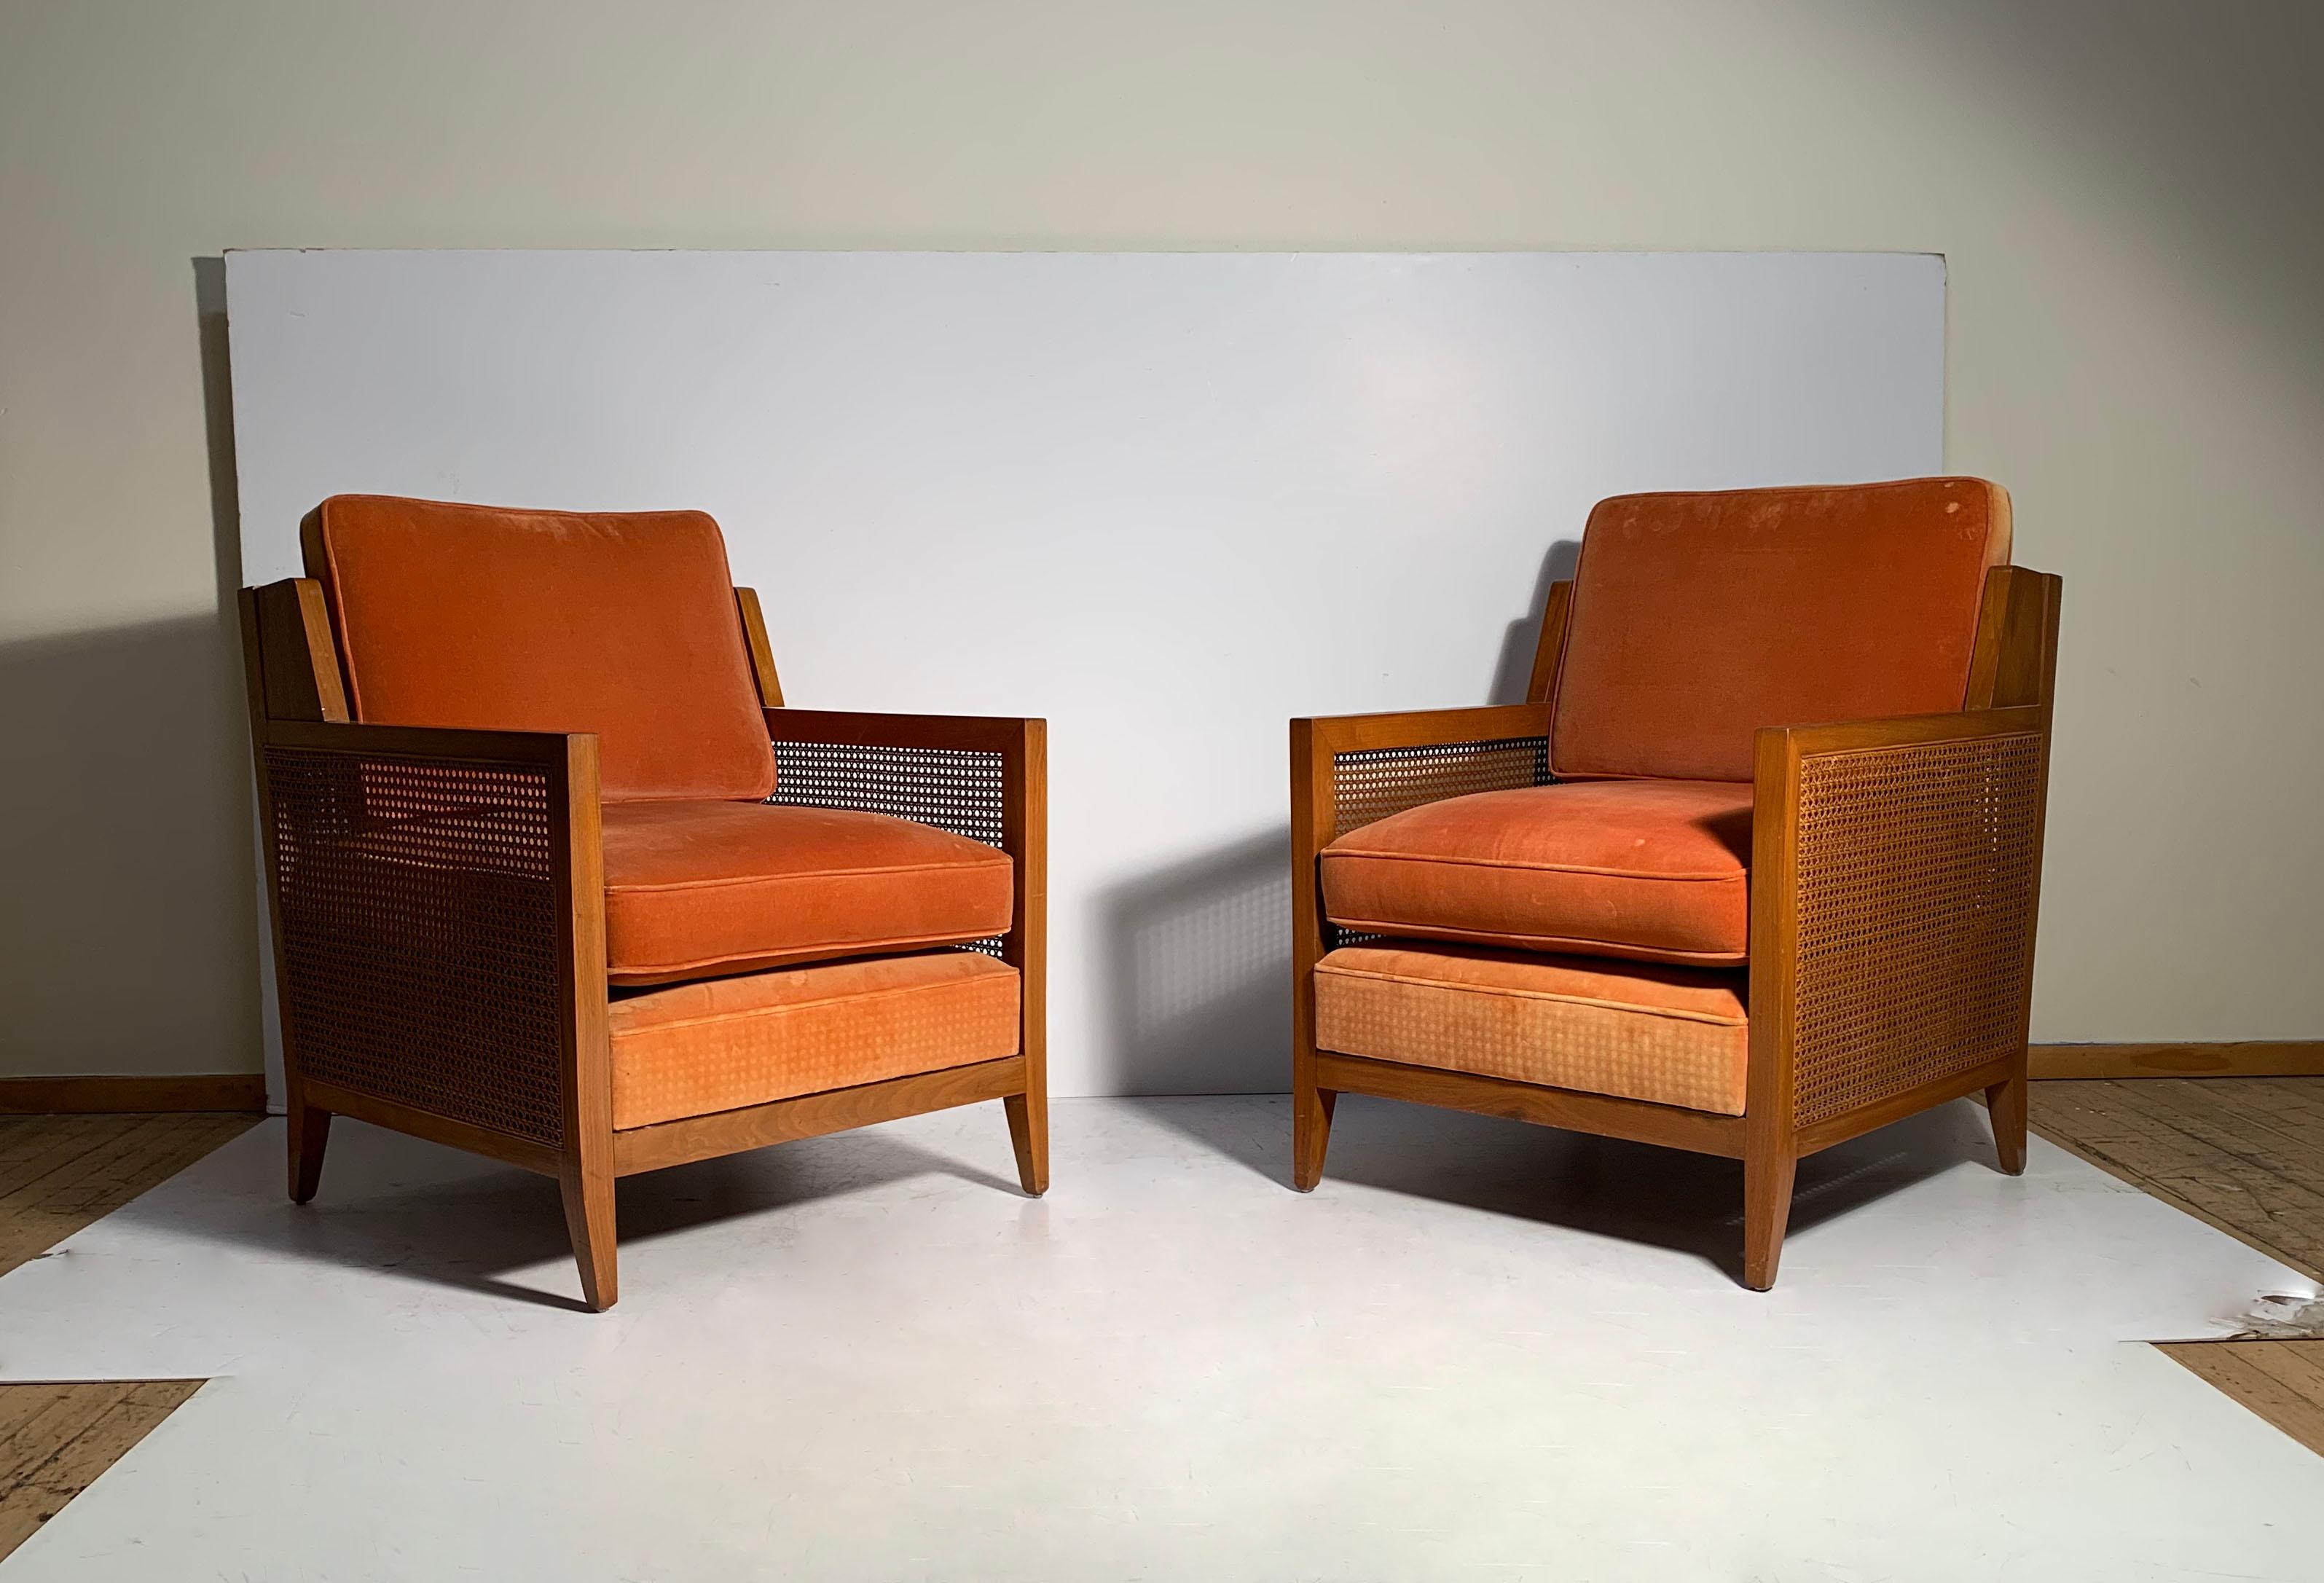 designer furniture used